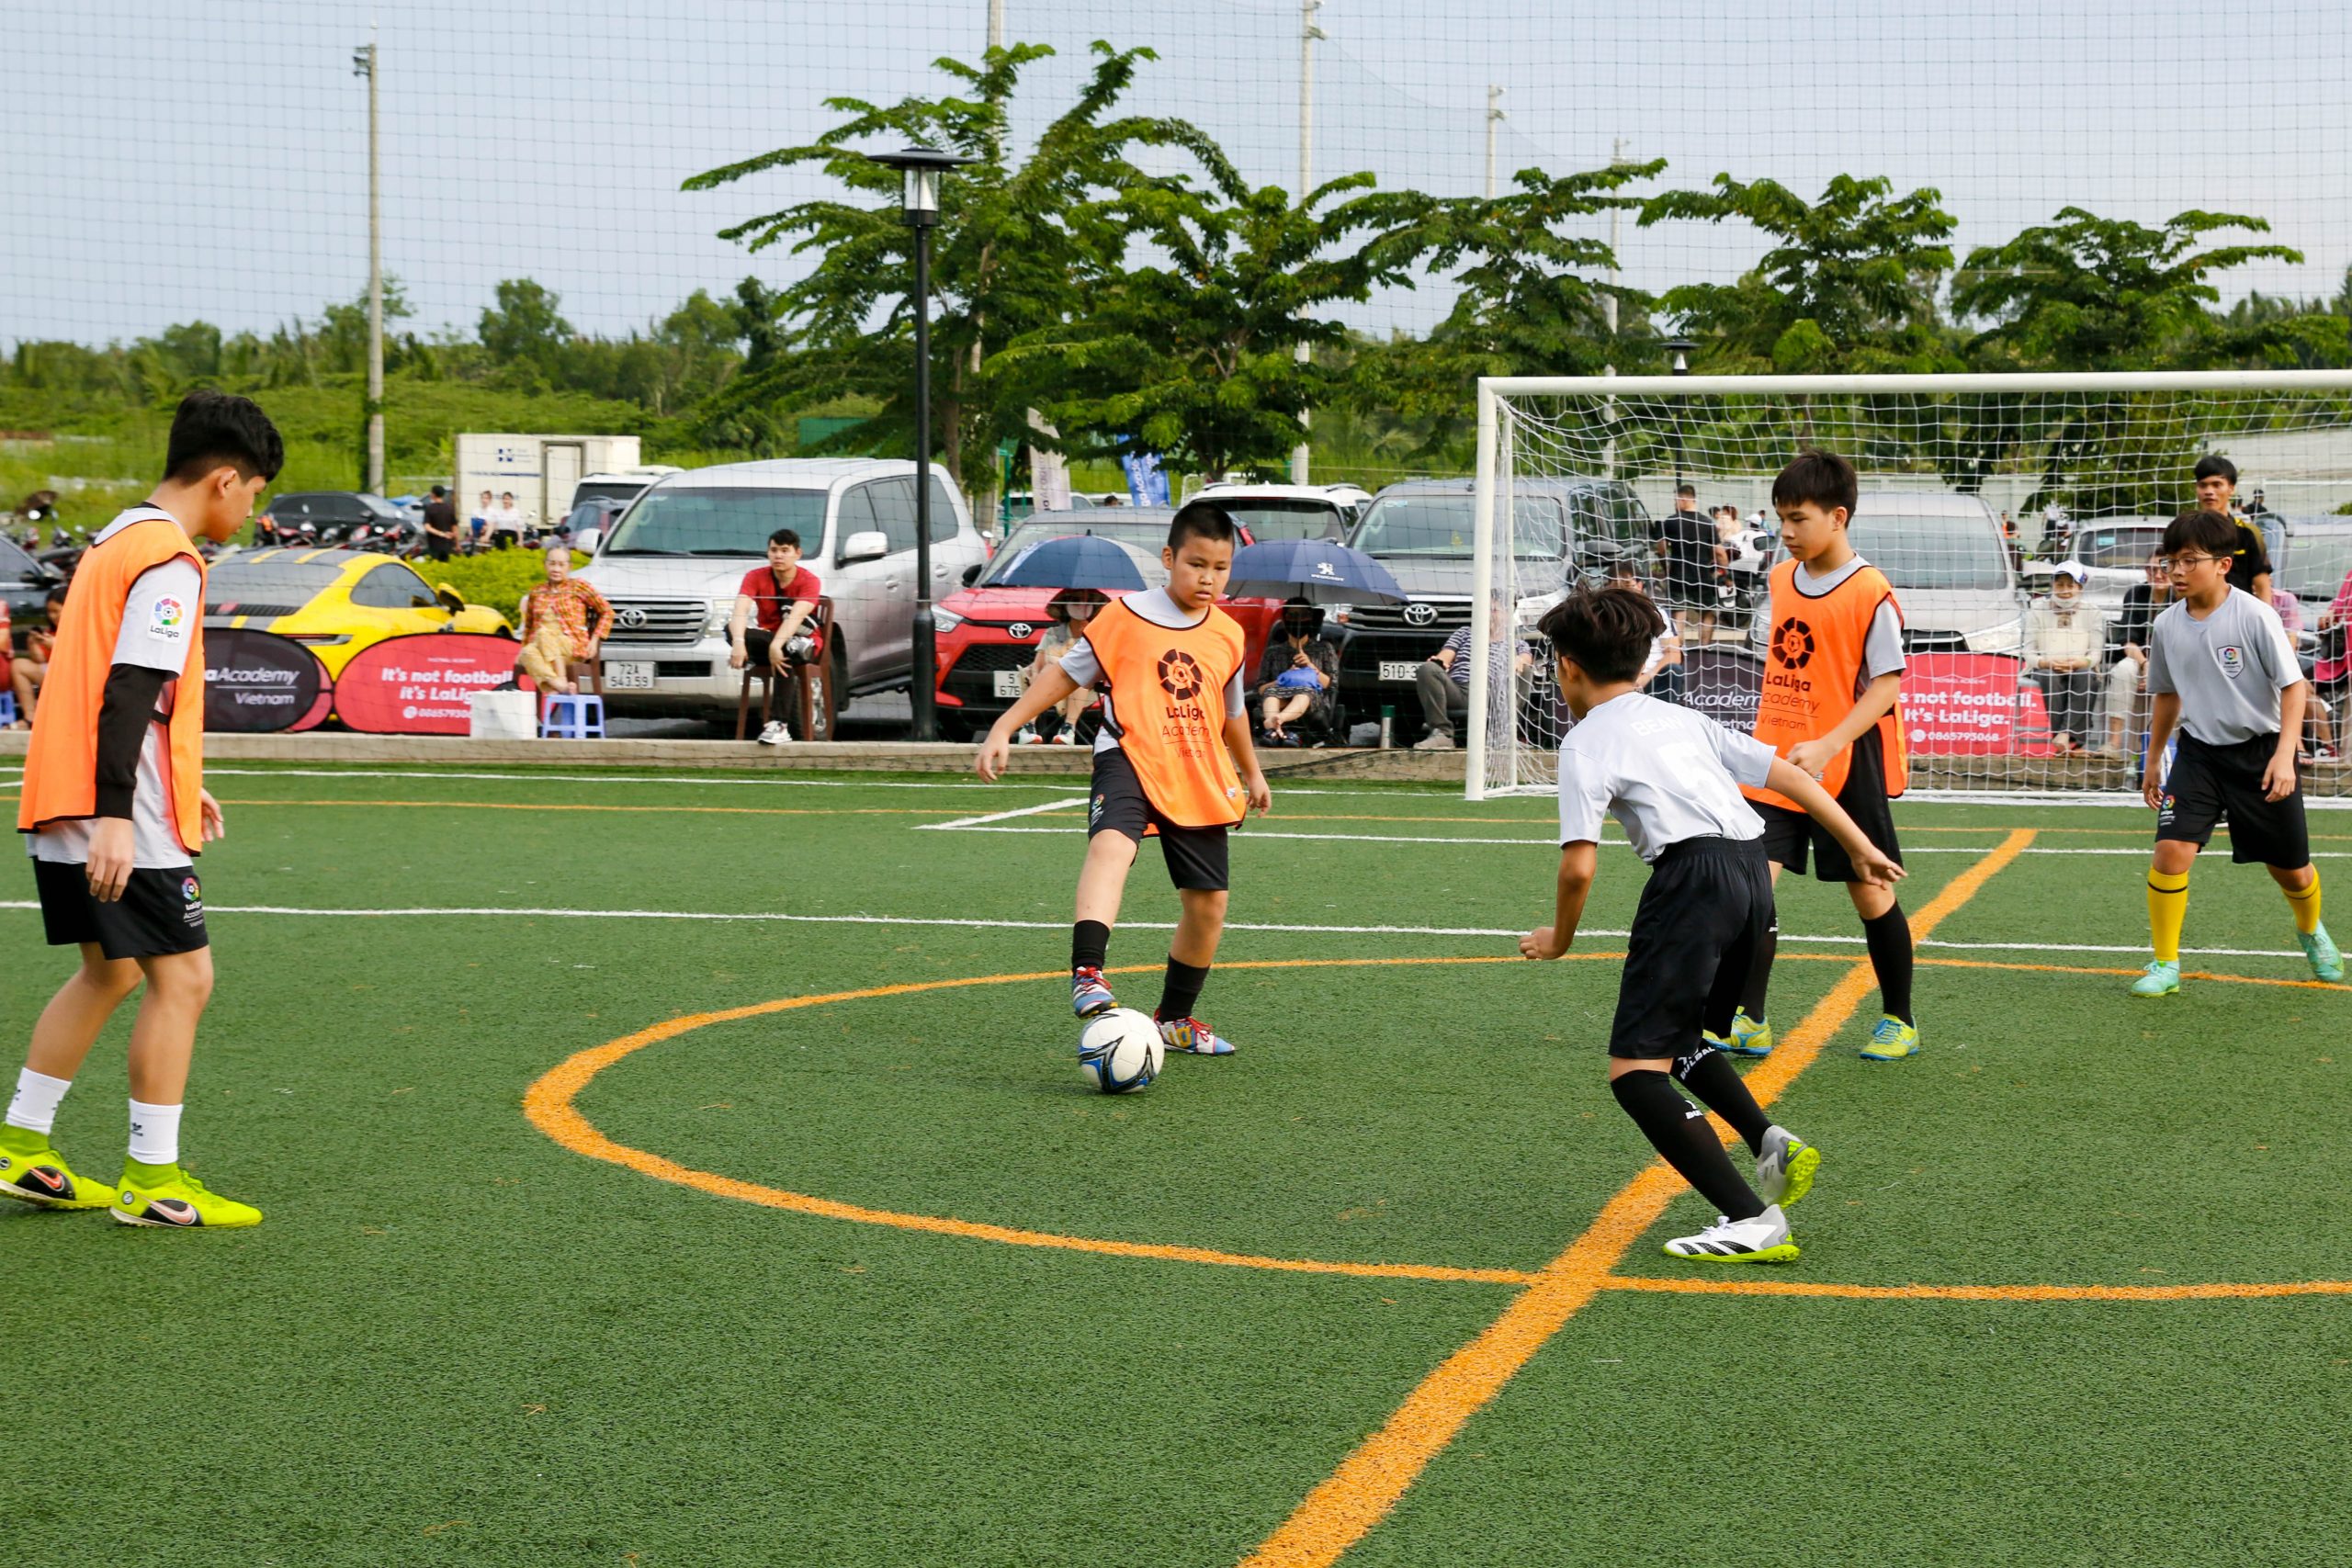 IMG 9830 scaled | Laliga Việt Nam - Ươm mầm tài năng bóng đá trẻ